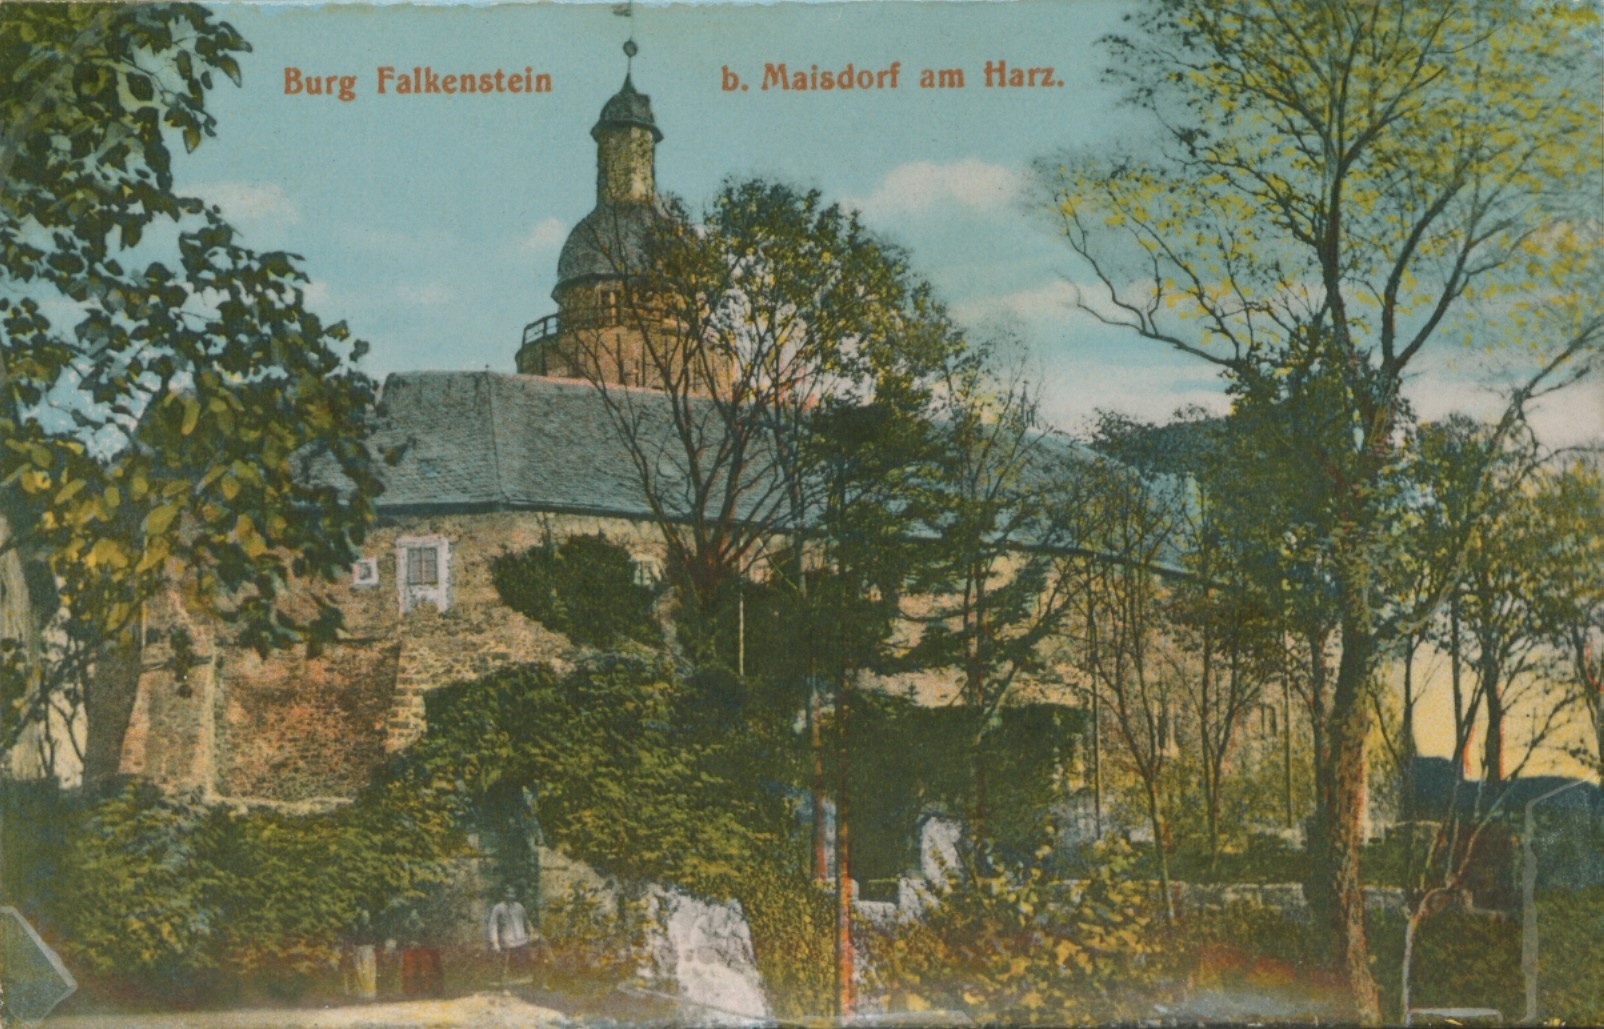 Ansichtskarte: Burg Falkenstein b. Maisdorf am Harz. (Kulturstiftung Sachsen-Anhalt CC BY-NC-SA)